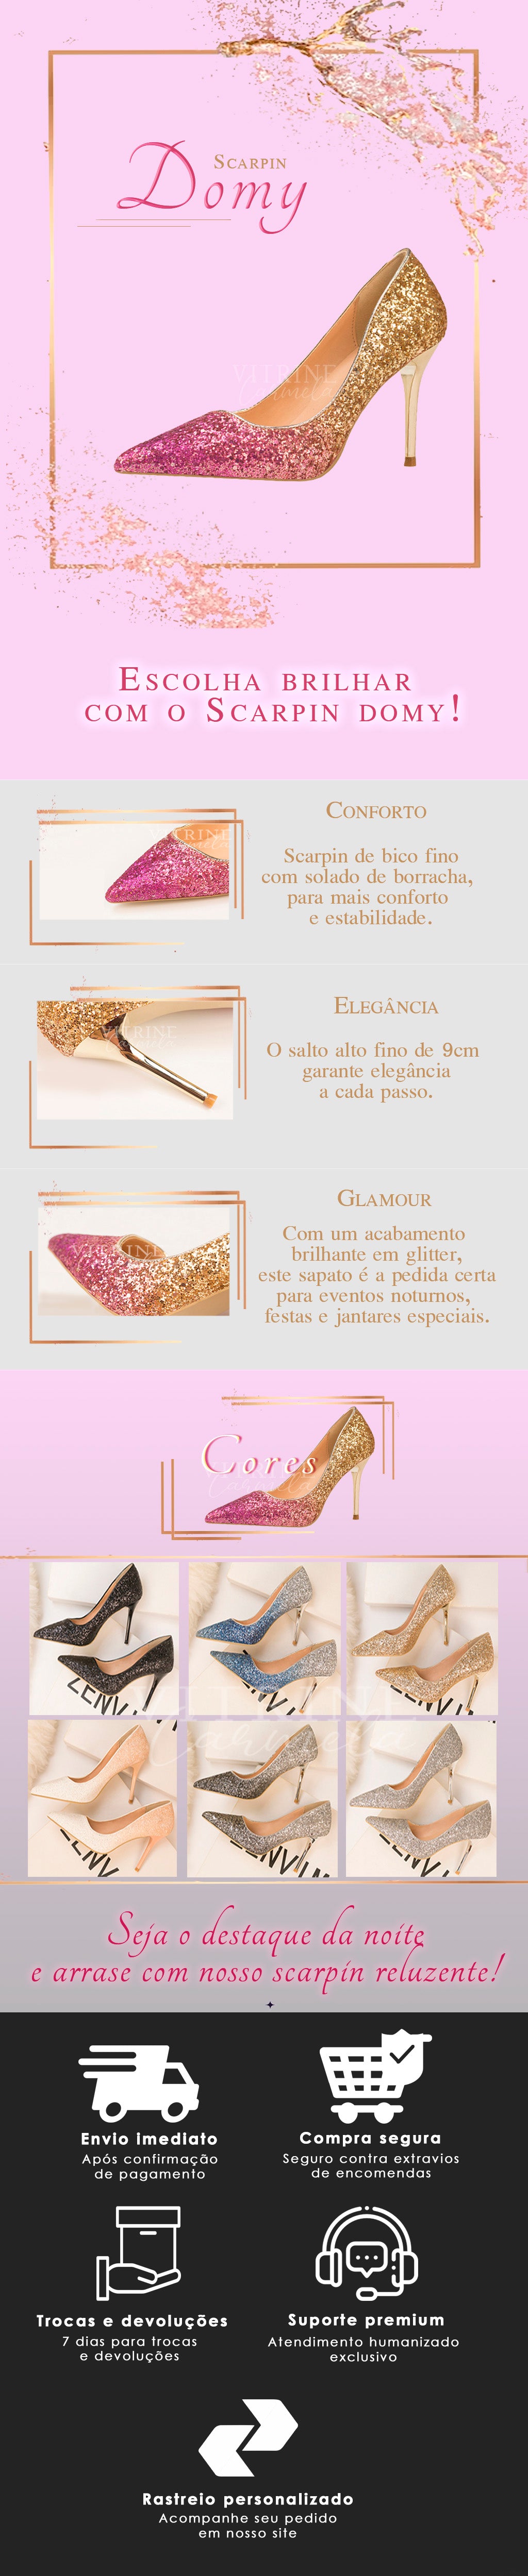 Sapato-feminino-em-promoção-com-frete-grátis-na-vitrine-carmela-Sapato-Domy